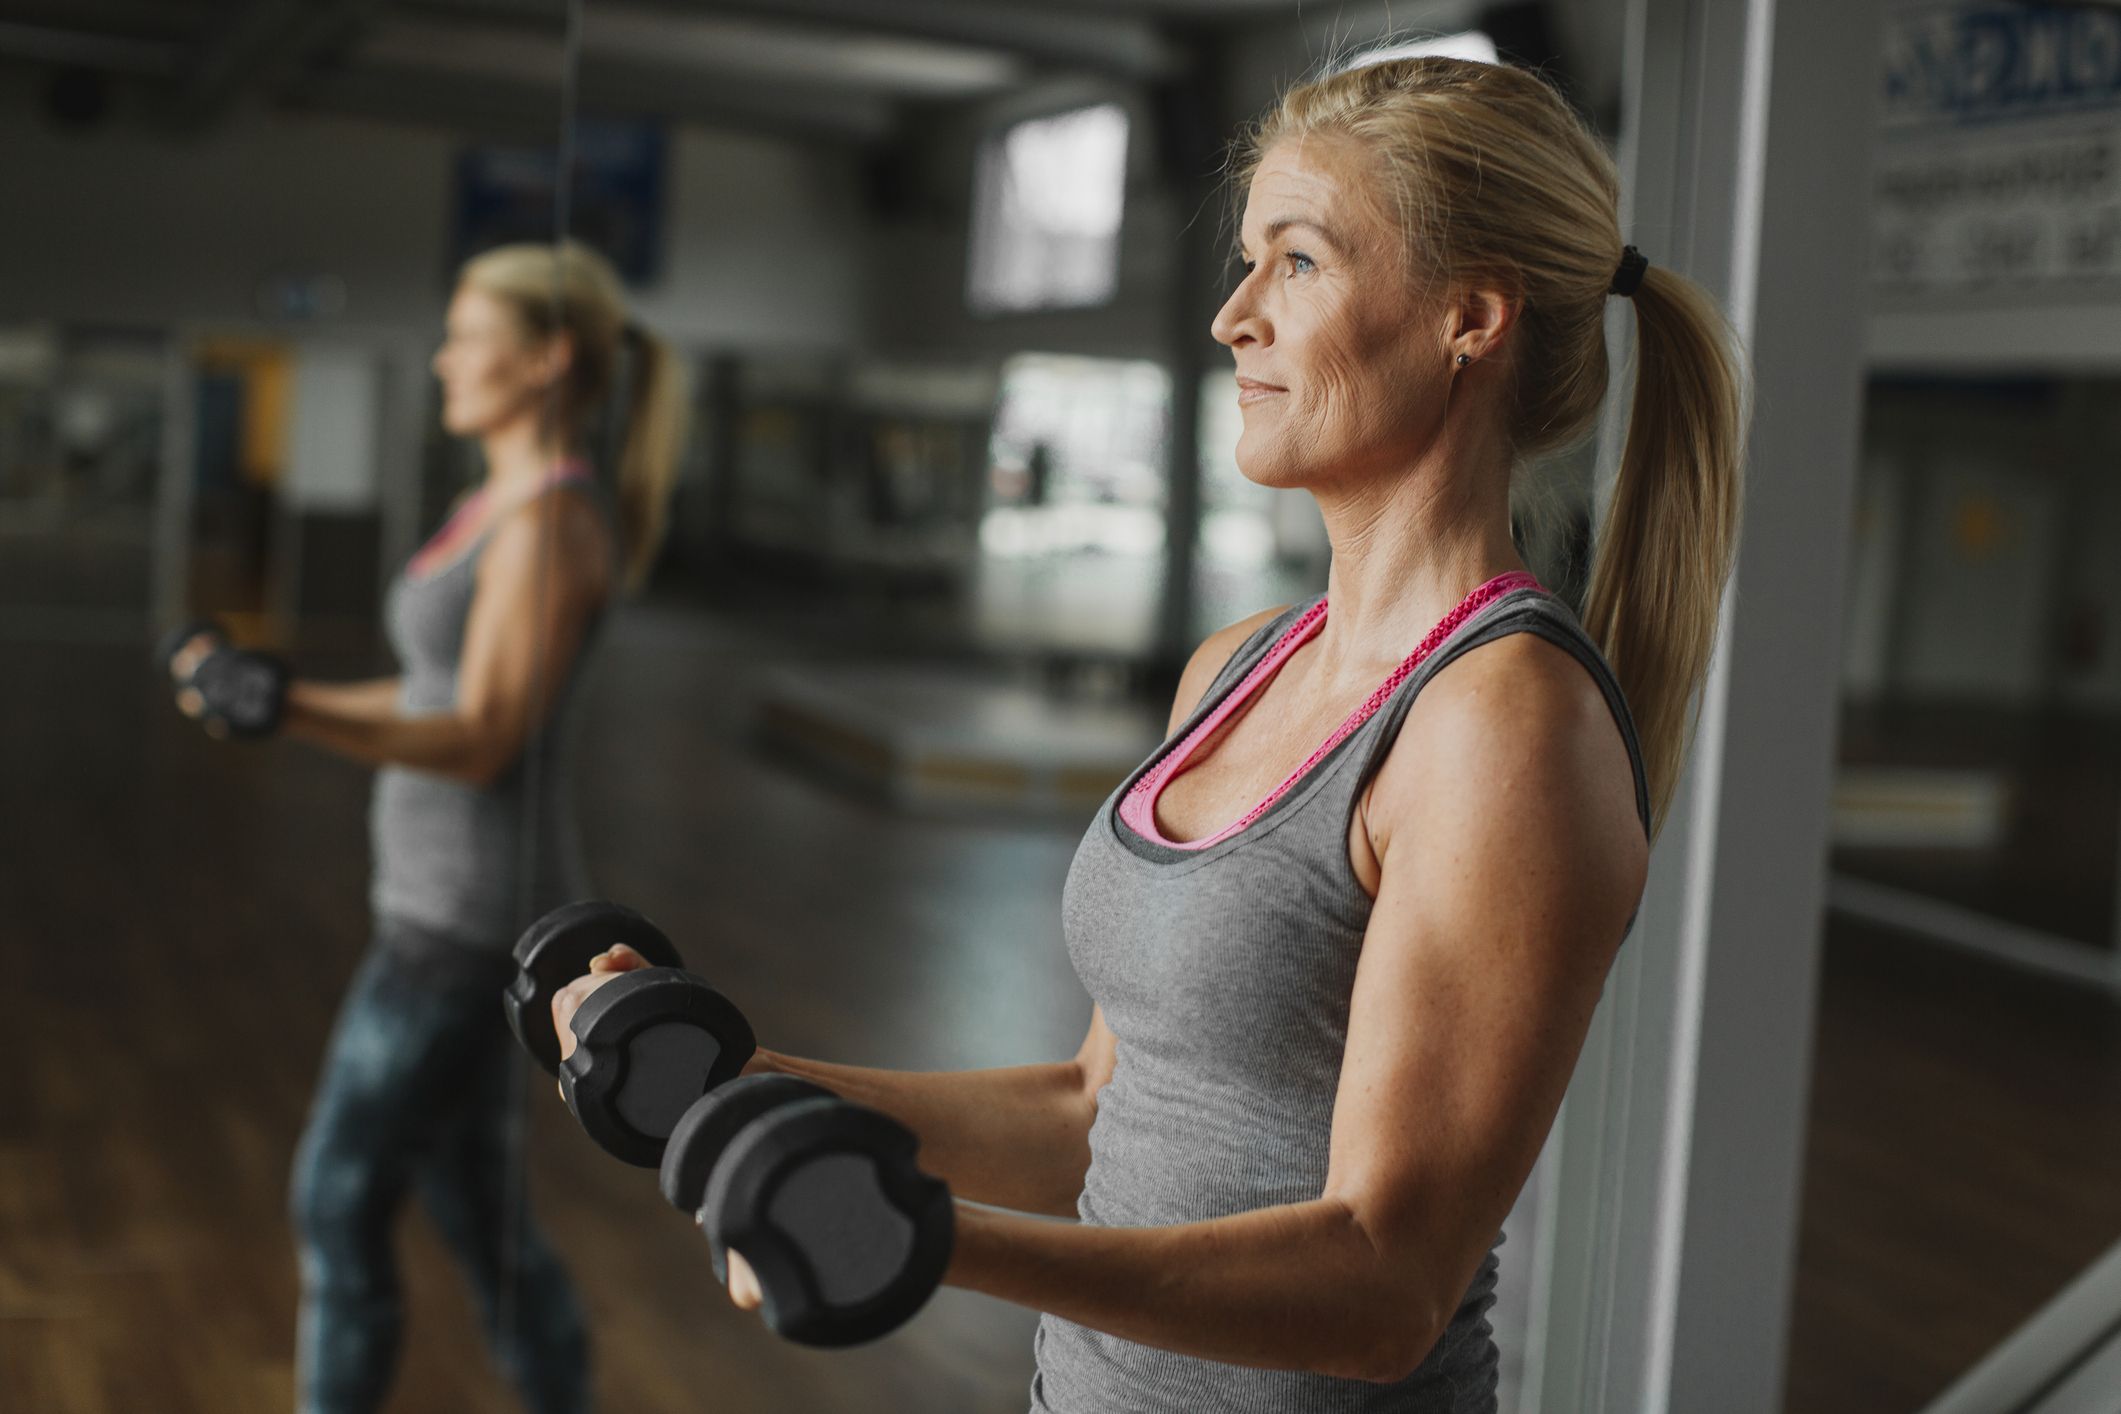 Cómo ajustar las rutinas de ejercicios para mujeres a partir de los 40 años